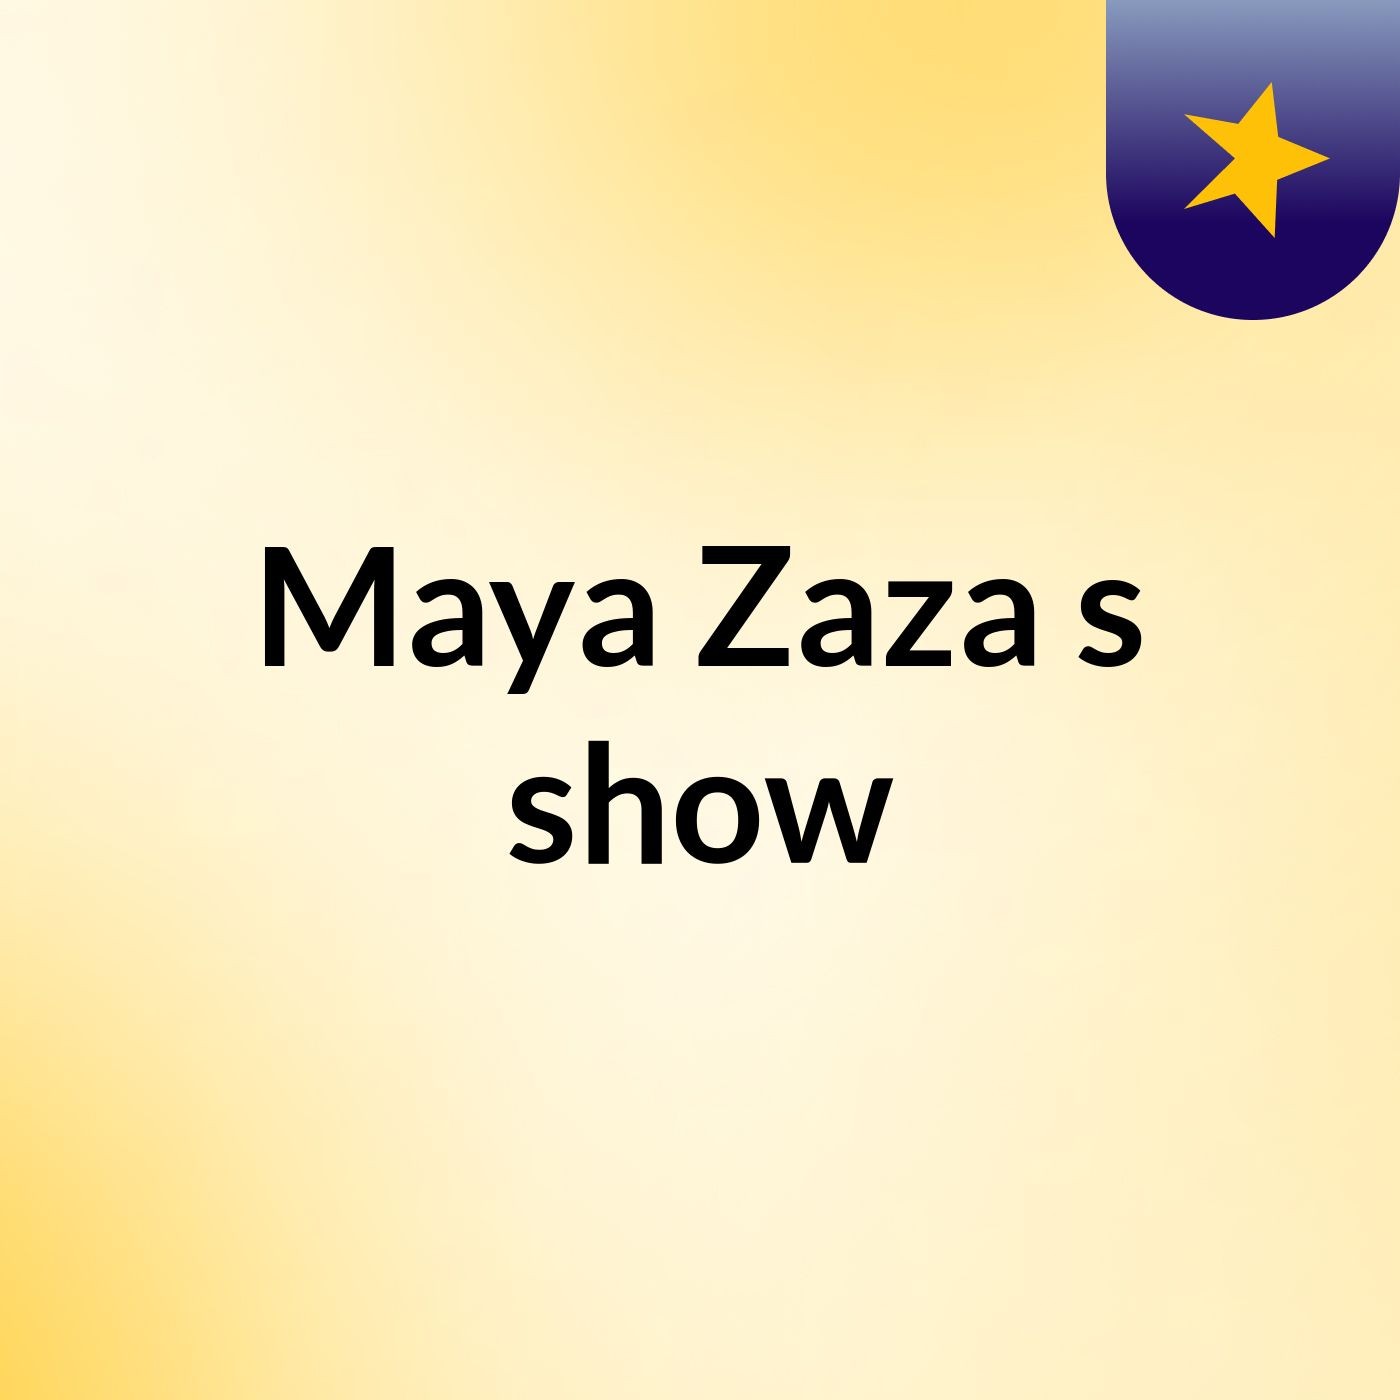 Maya Zaza's show